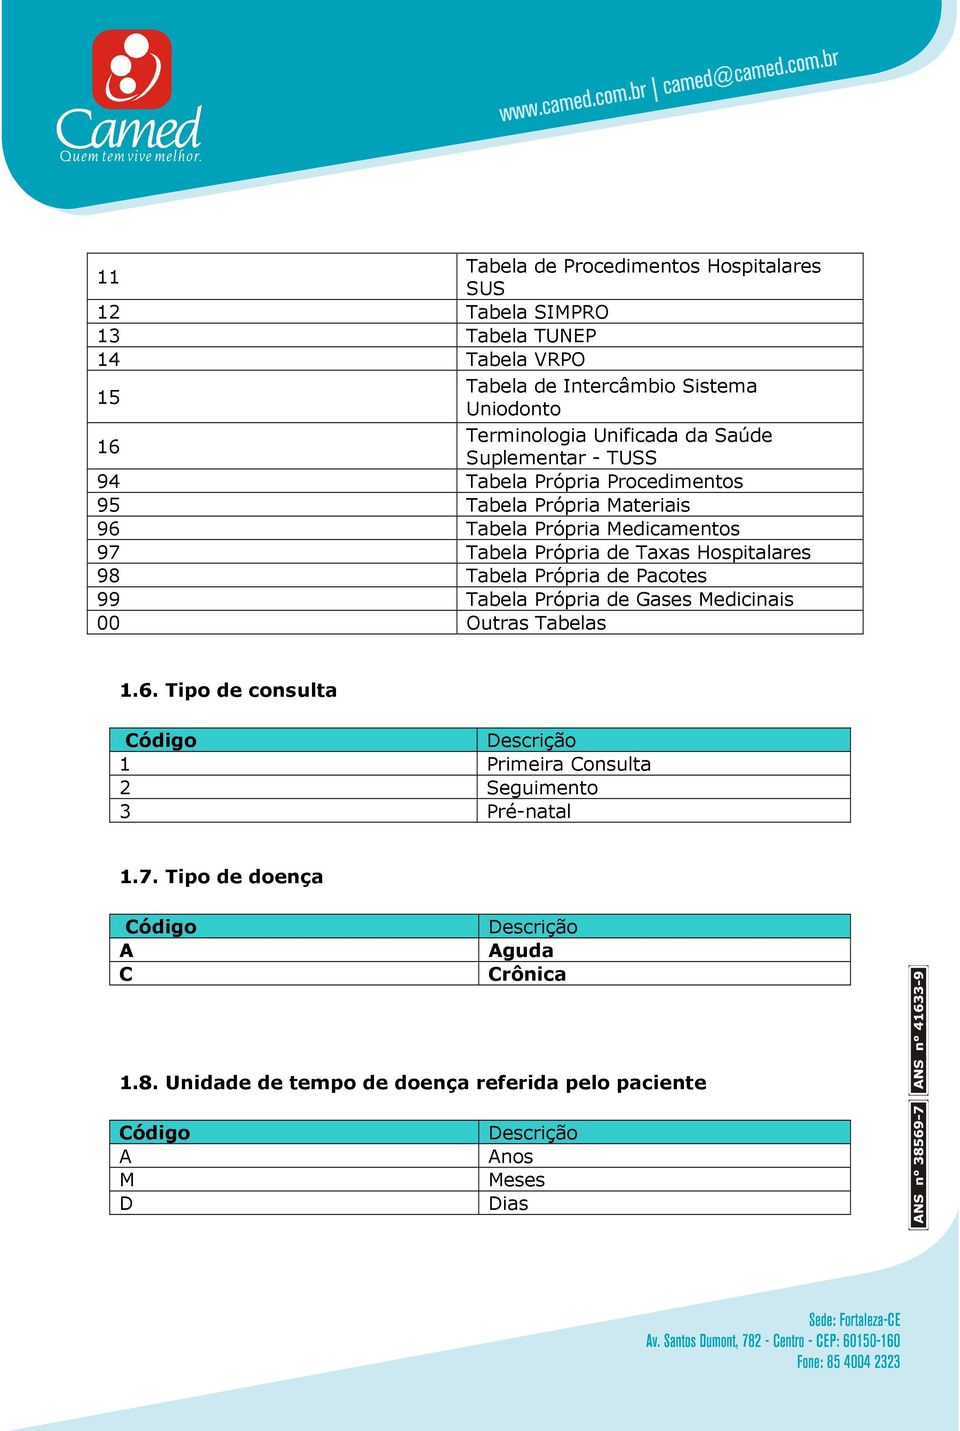 Tabela Própria de Taxas Hospitalares 98 Tabela Própria de Pacotes 99 Tabela Própria de Gases Medicinais 00 Outras Tabelas 1.6.